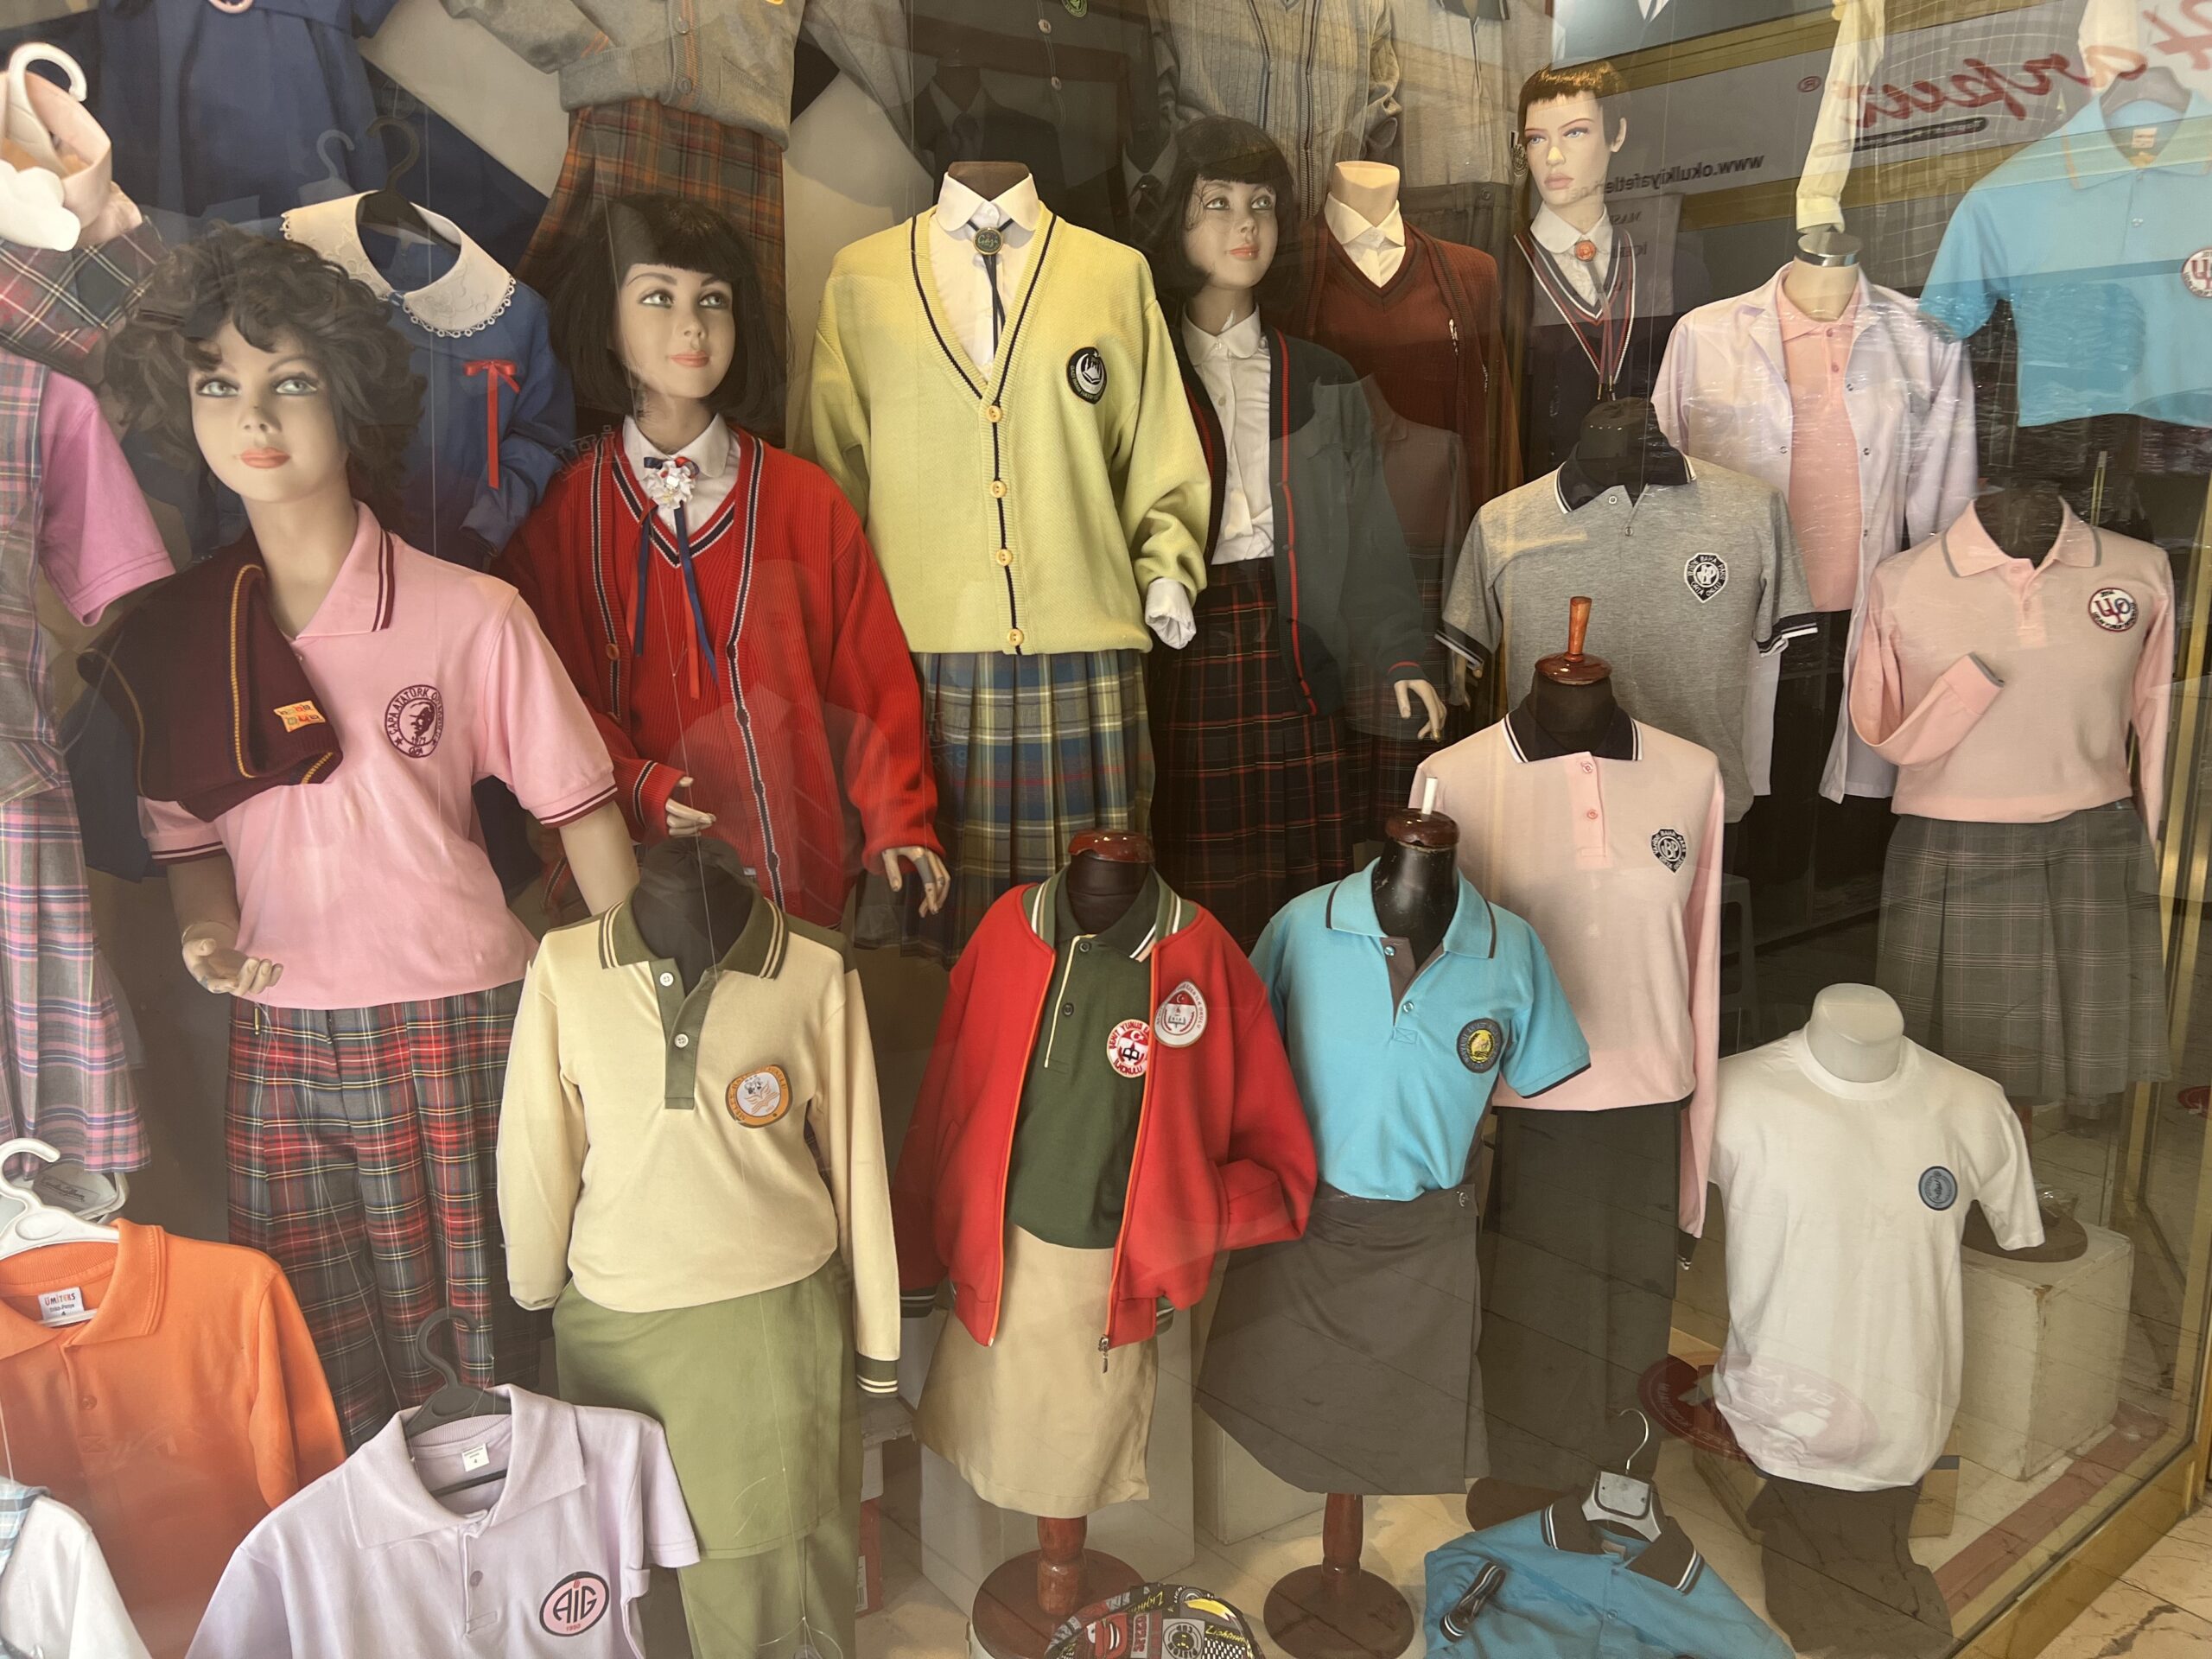 Okul kıyafetlerinin fiyatlarından veliler şikâyetçi